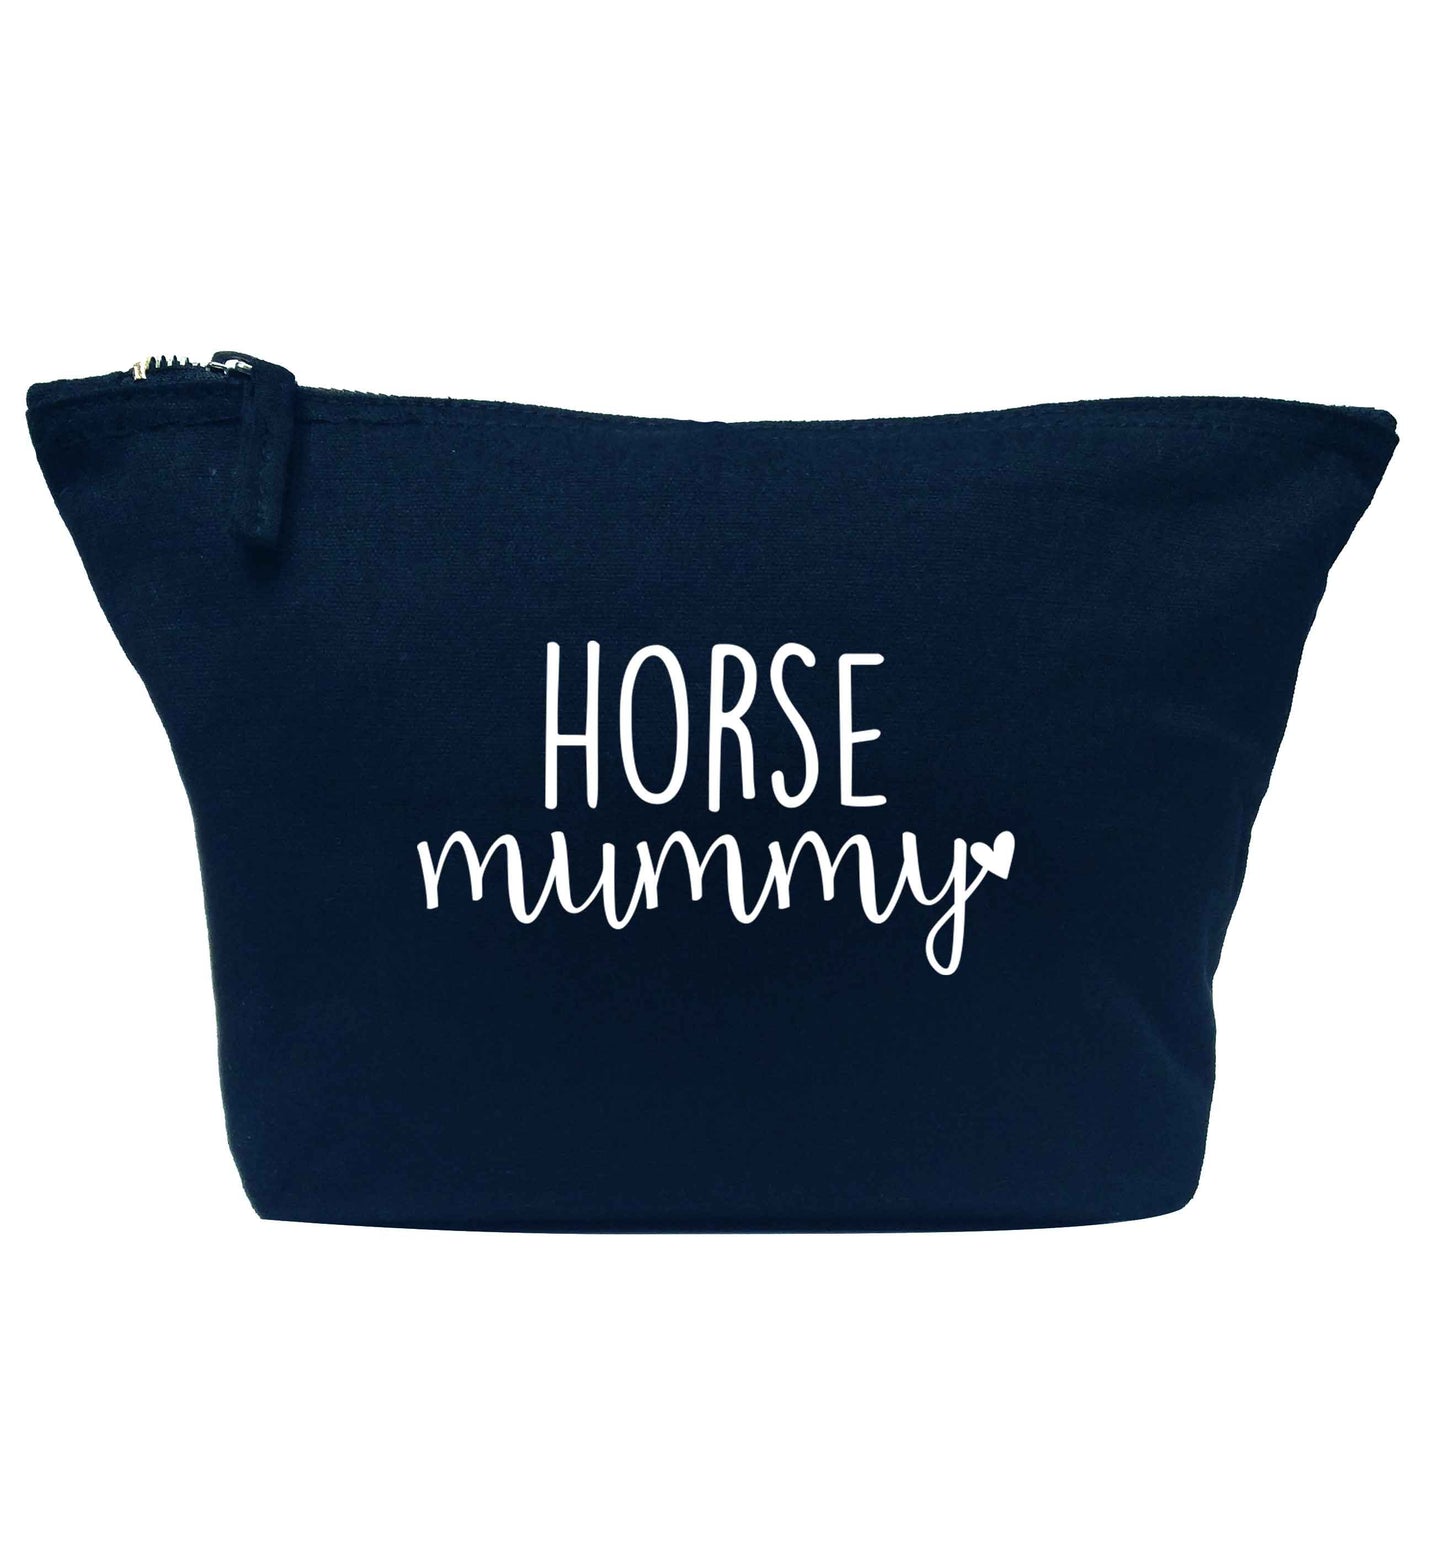 Horse mummy navy makeup bag